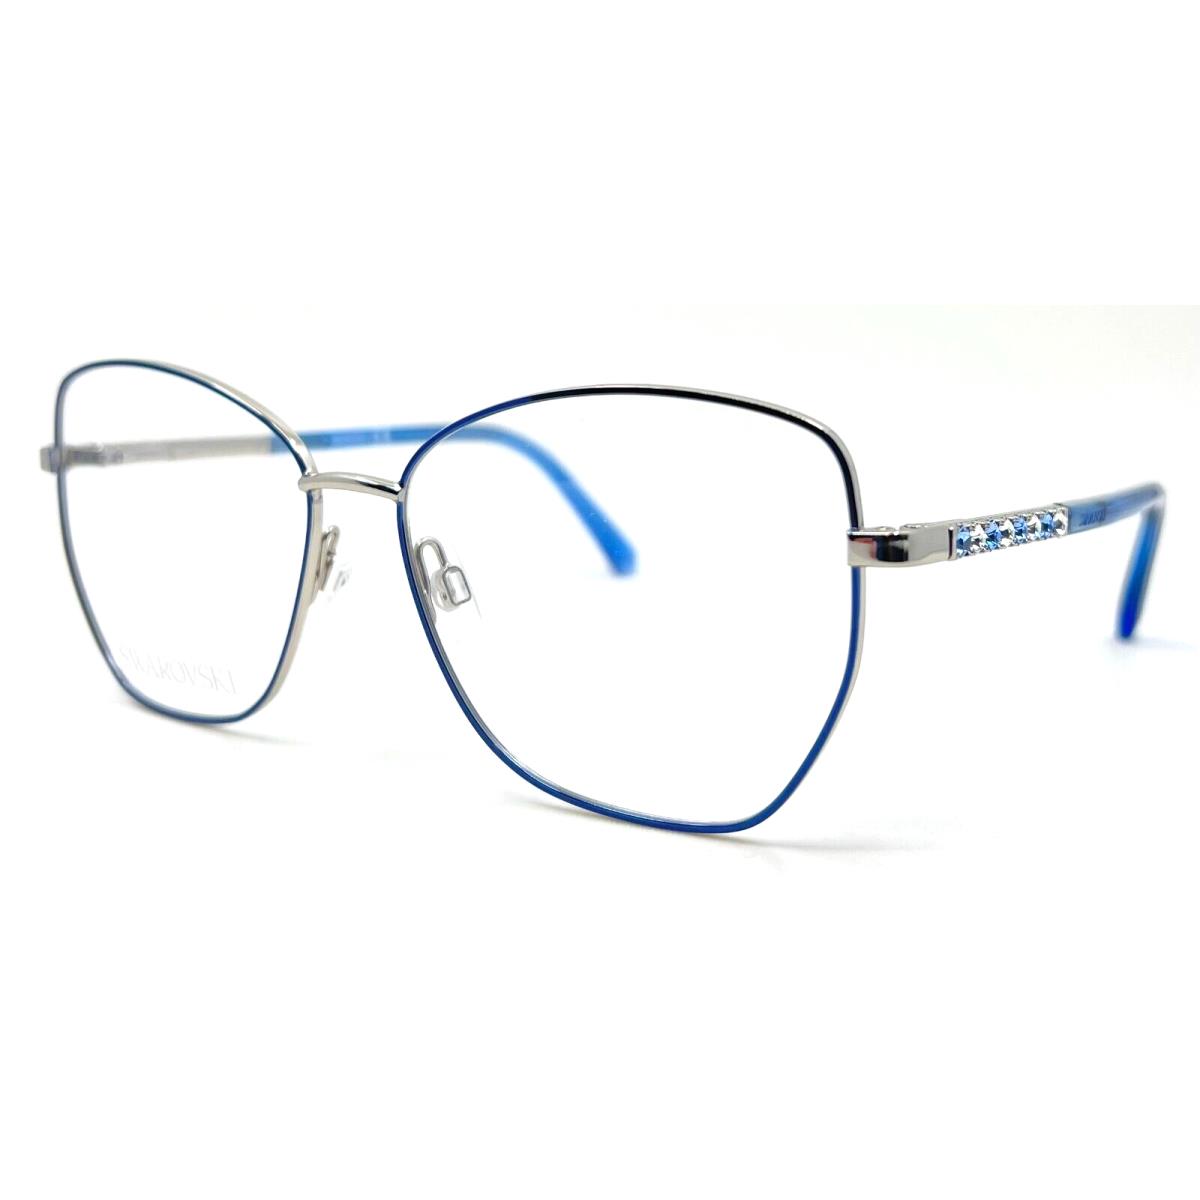 Swarovski - SK5393 016 55/14/140 - Blue - Eyeglasses Case